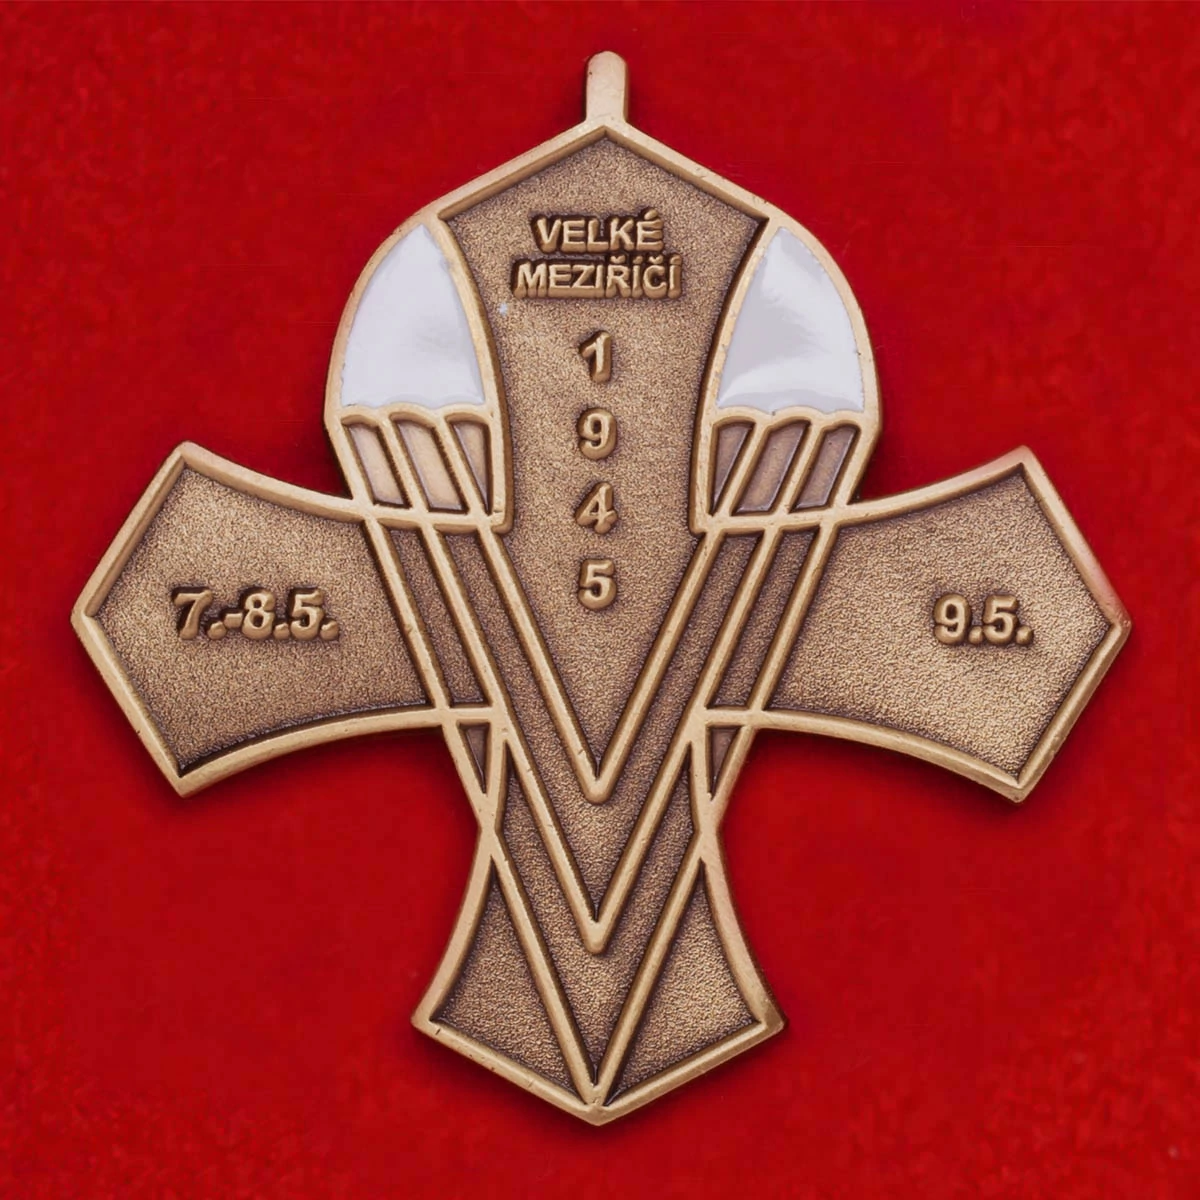 Челлендж коин в память о чешских десантниках-диверсантах "Вельке-Мезиржичи. 1945 год"